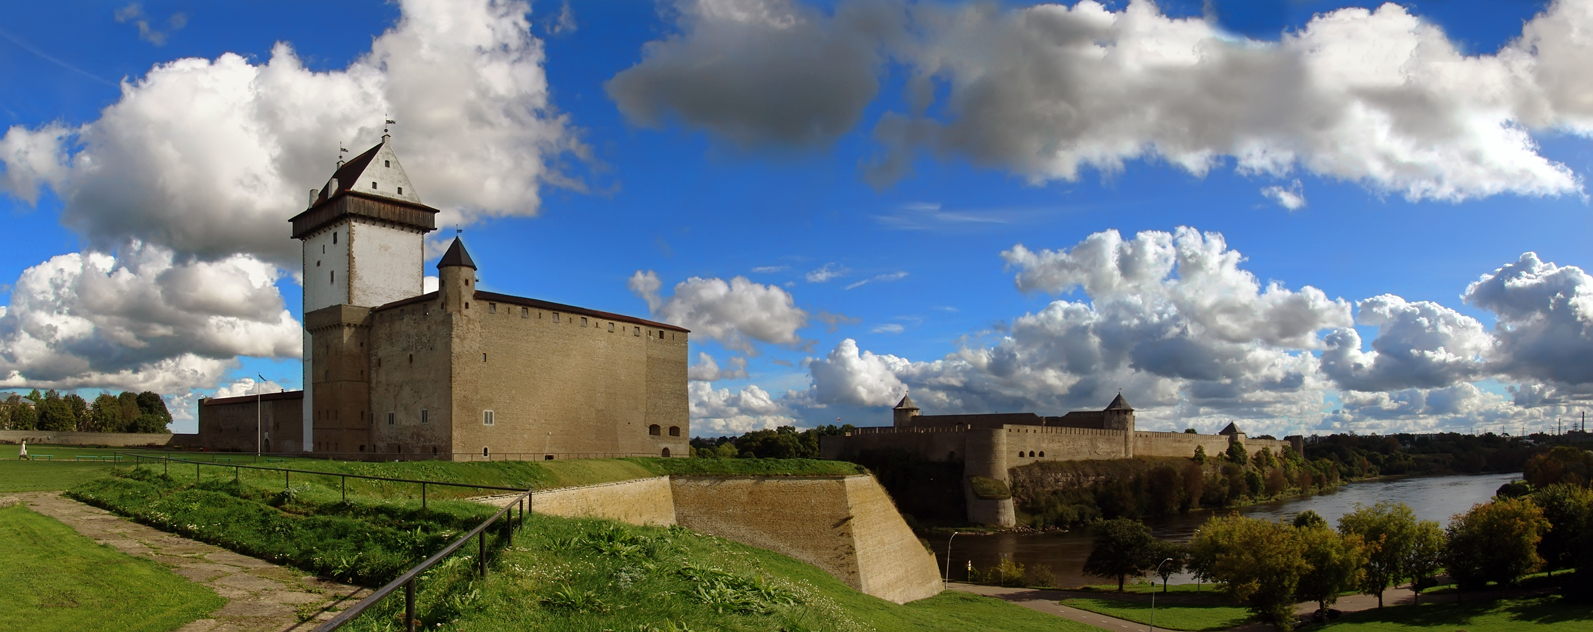 Нарвский замок - Эстония фото #4354